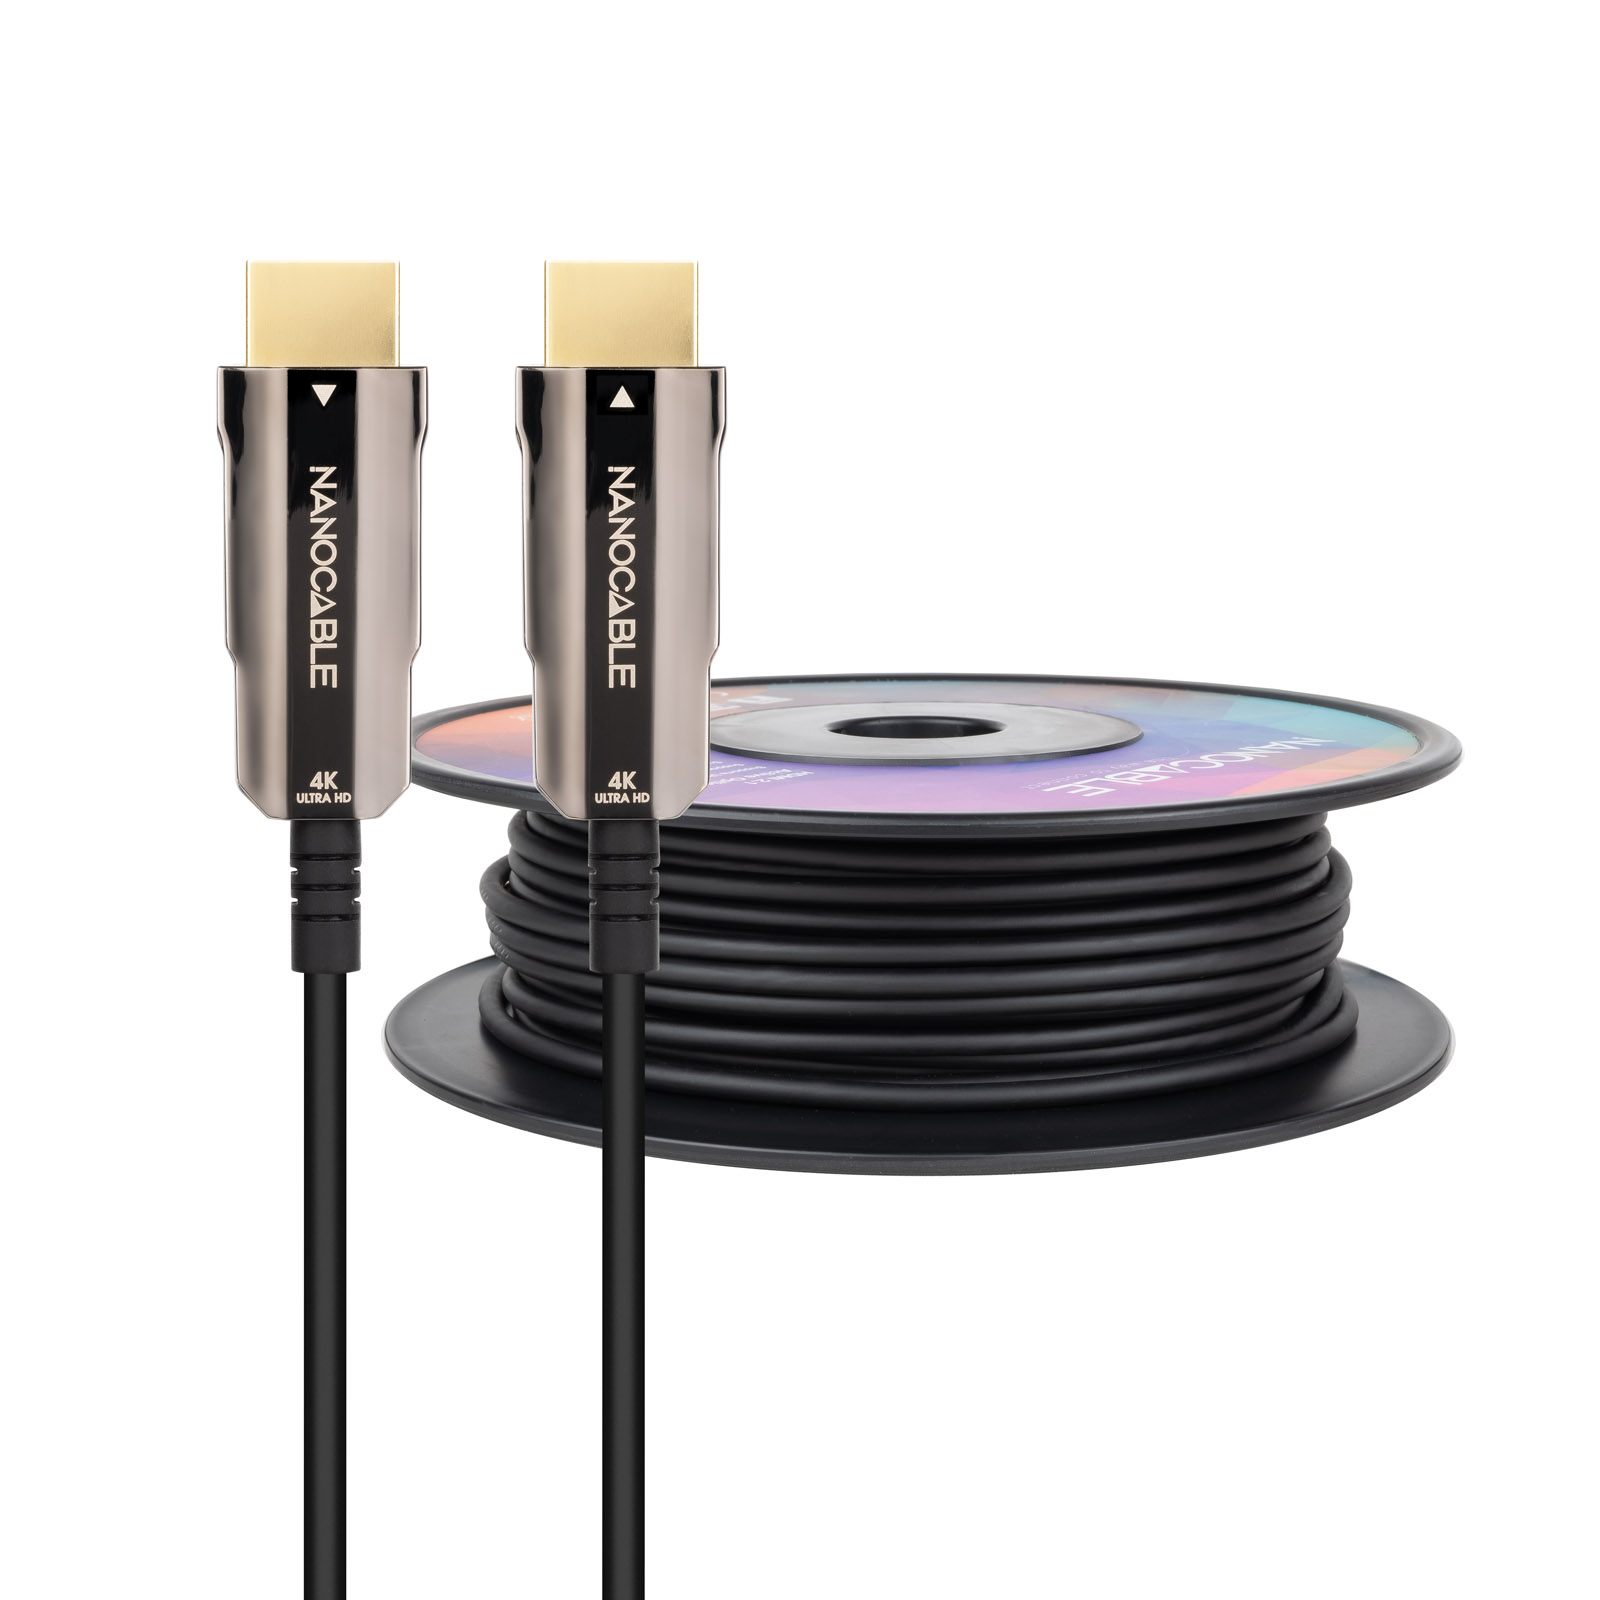 Câble Nanocable HDMI v2.0 Mâle vers HDMI v2.0 Mâle 80m - 4K@60Hz 18Gbps - Couleur Noir